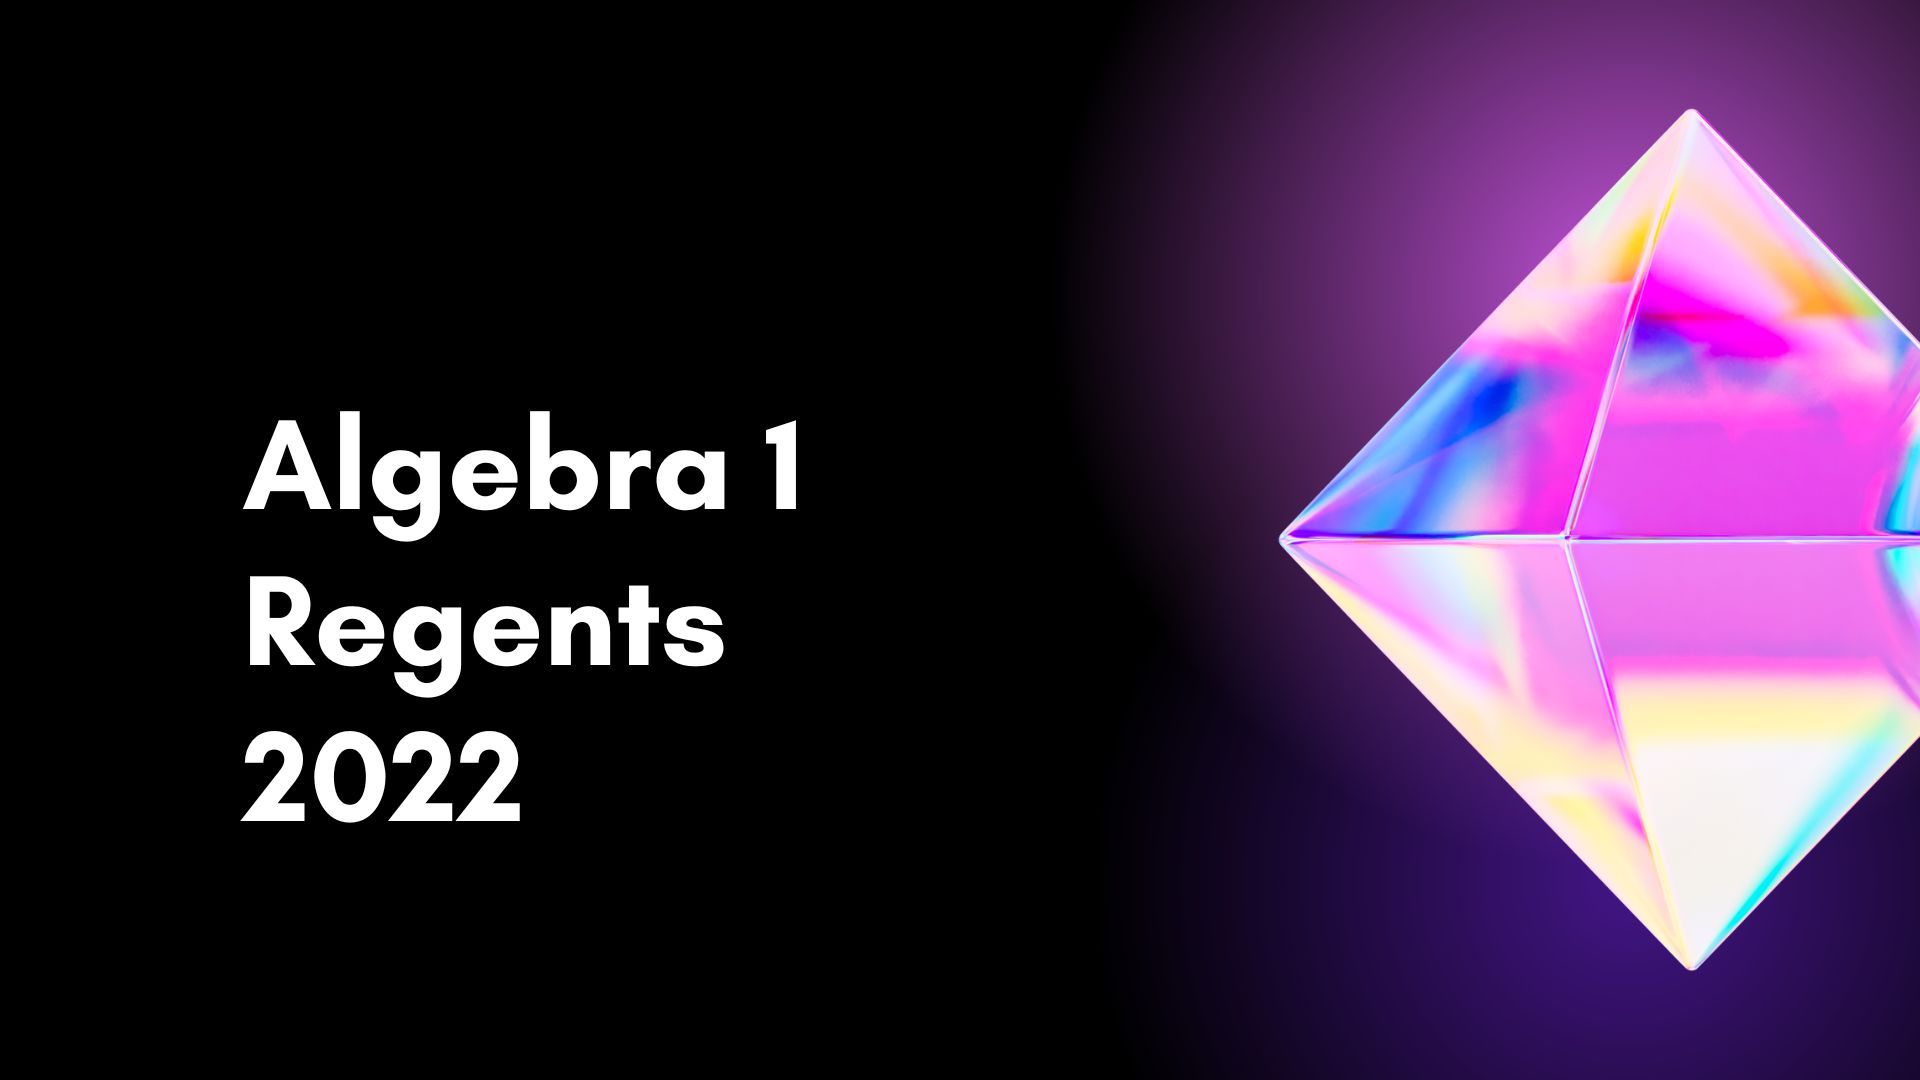 Algebra 1 Regents 2022 Find Relevant Details!